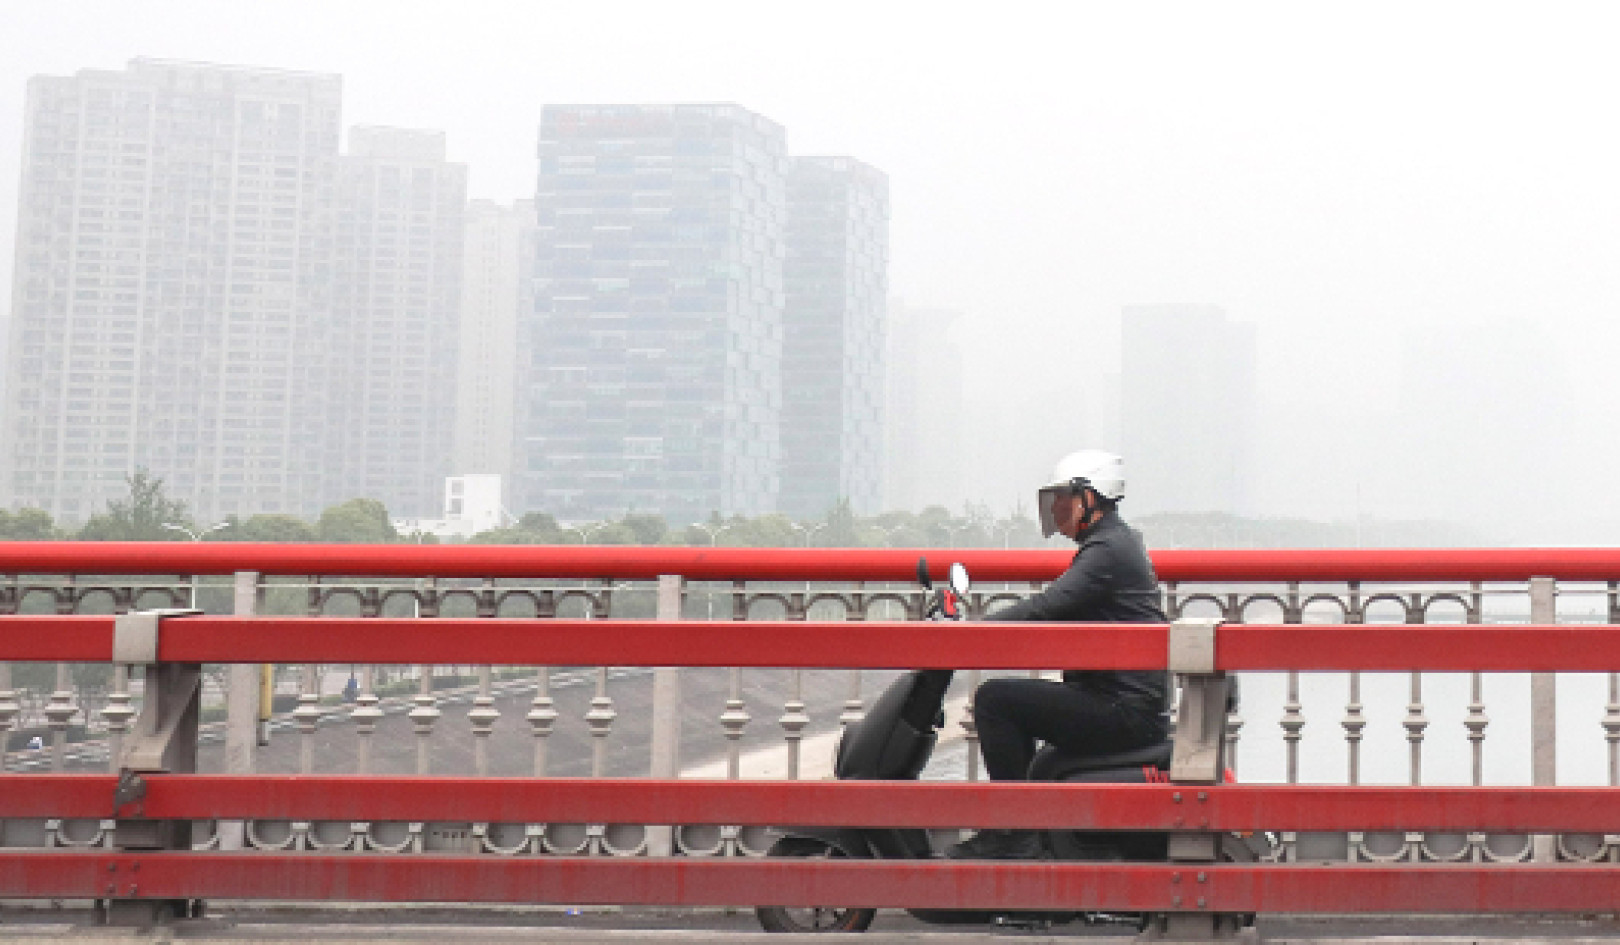 זיהום אוויר עלול לגרום להרבה יותר מקרי מוות ממה שחשבו בעבר